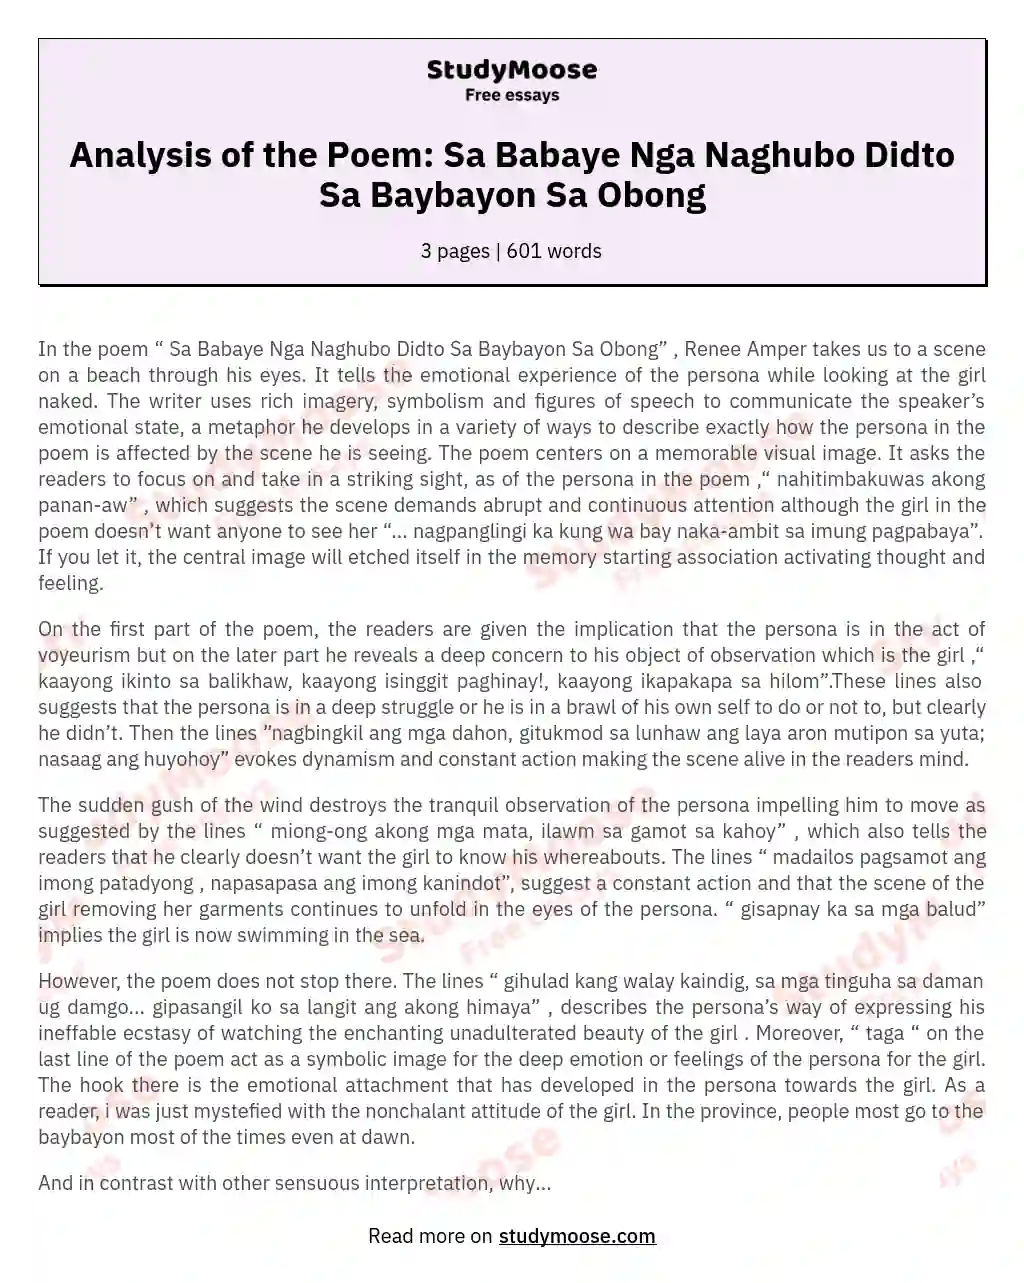 Analysis of the Poem: Sa Babaye Nga Naghubo Didto Sa Baybayon Sa Obong essay